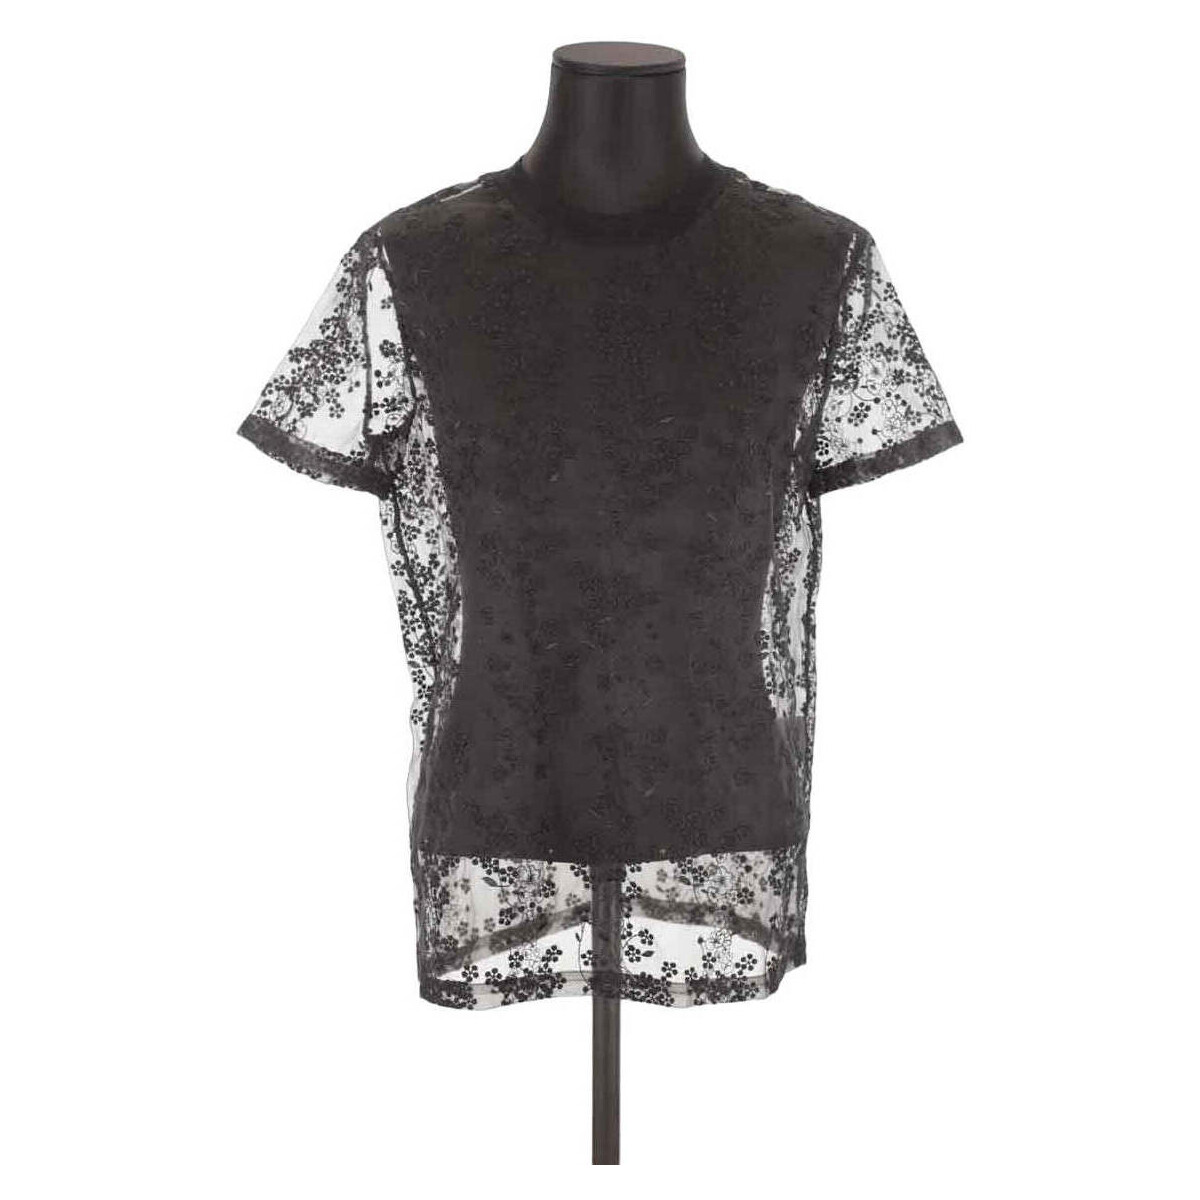 Vêtements Femme product eng 1024636 Converse Festival Print Star T Shirt Blouse Noir